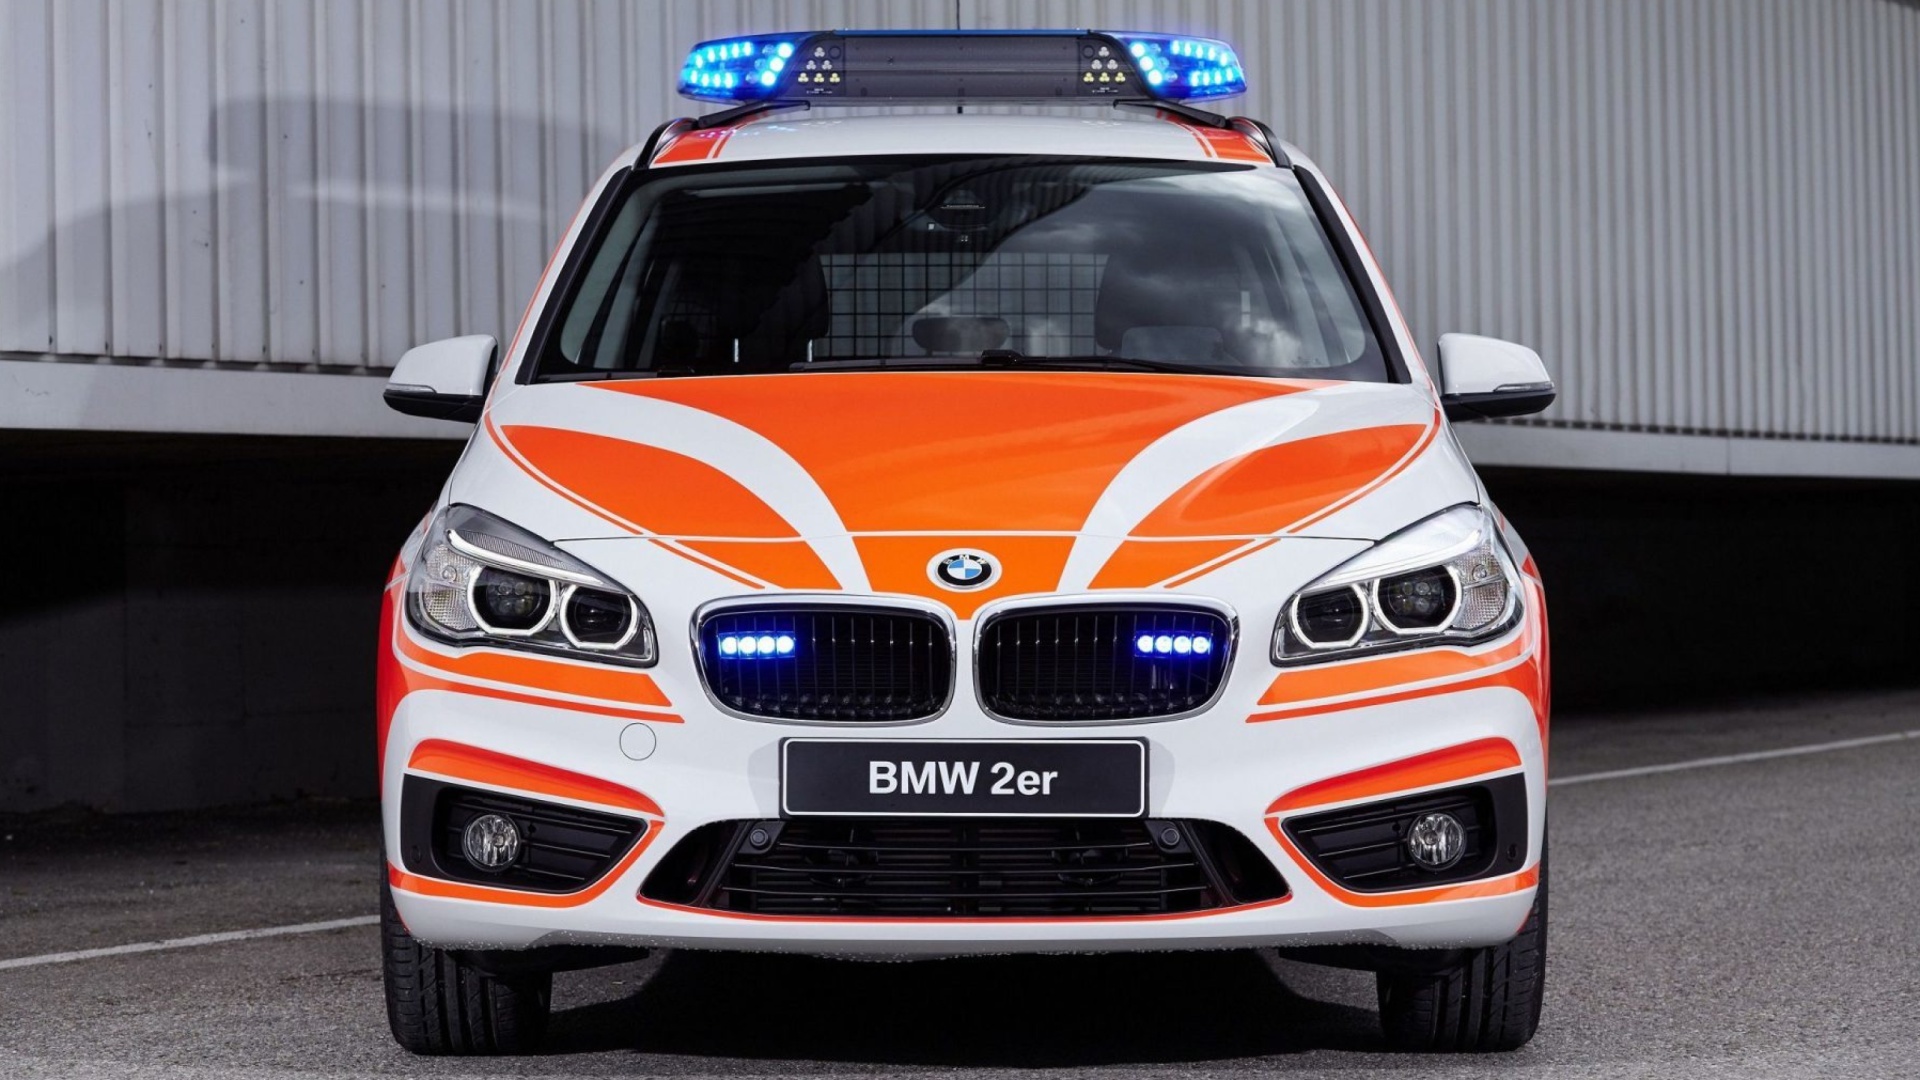 Fondo de pantalla BMW 2 Police Car 1920x1080